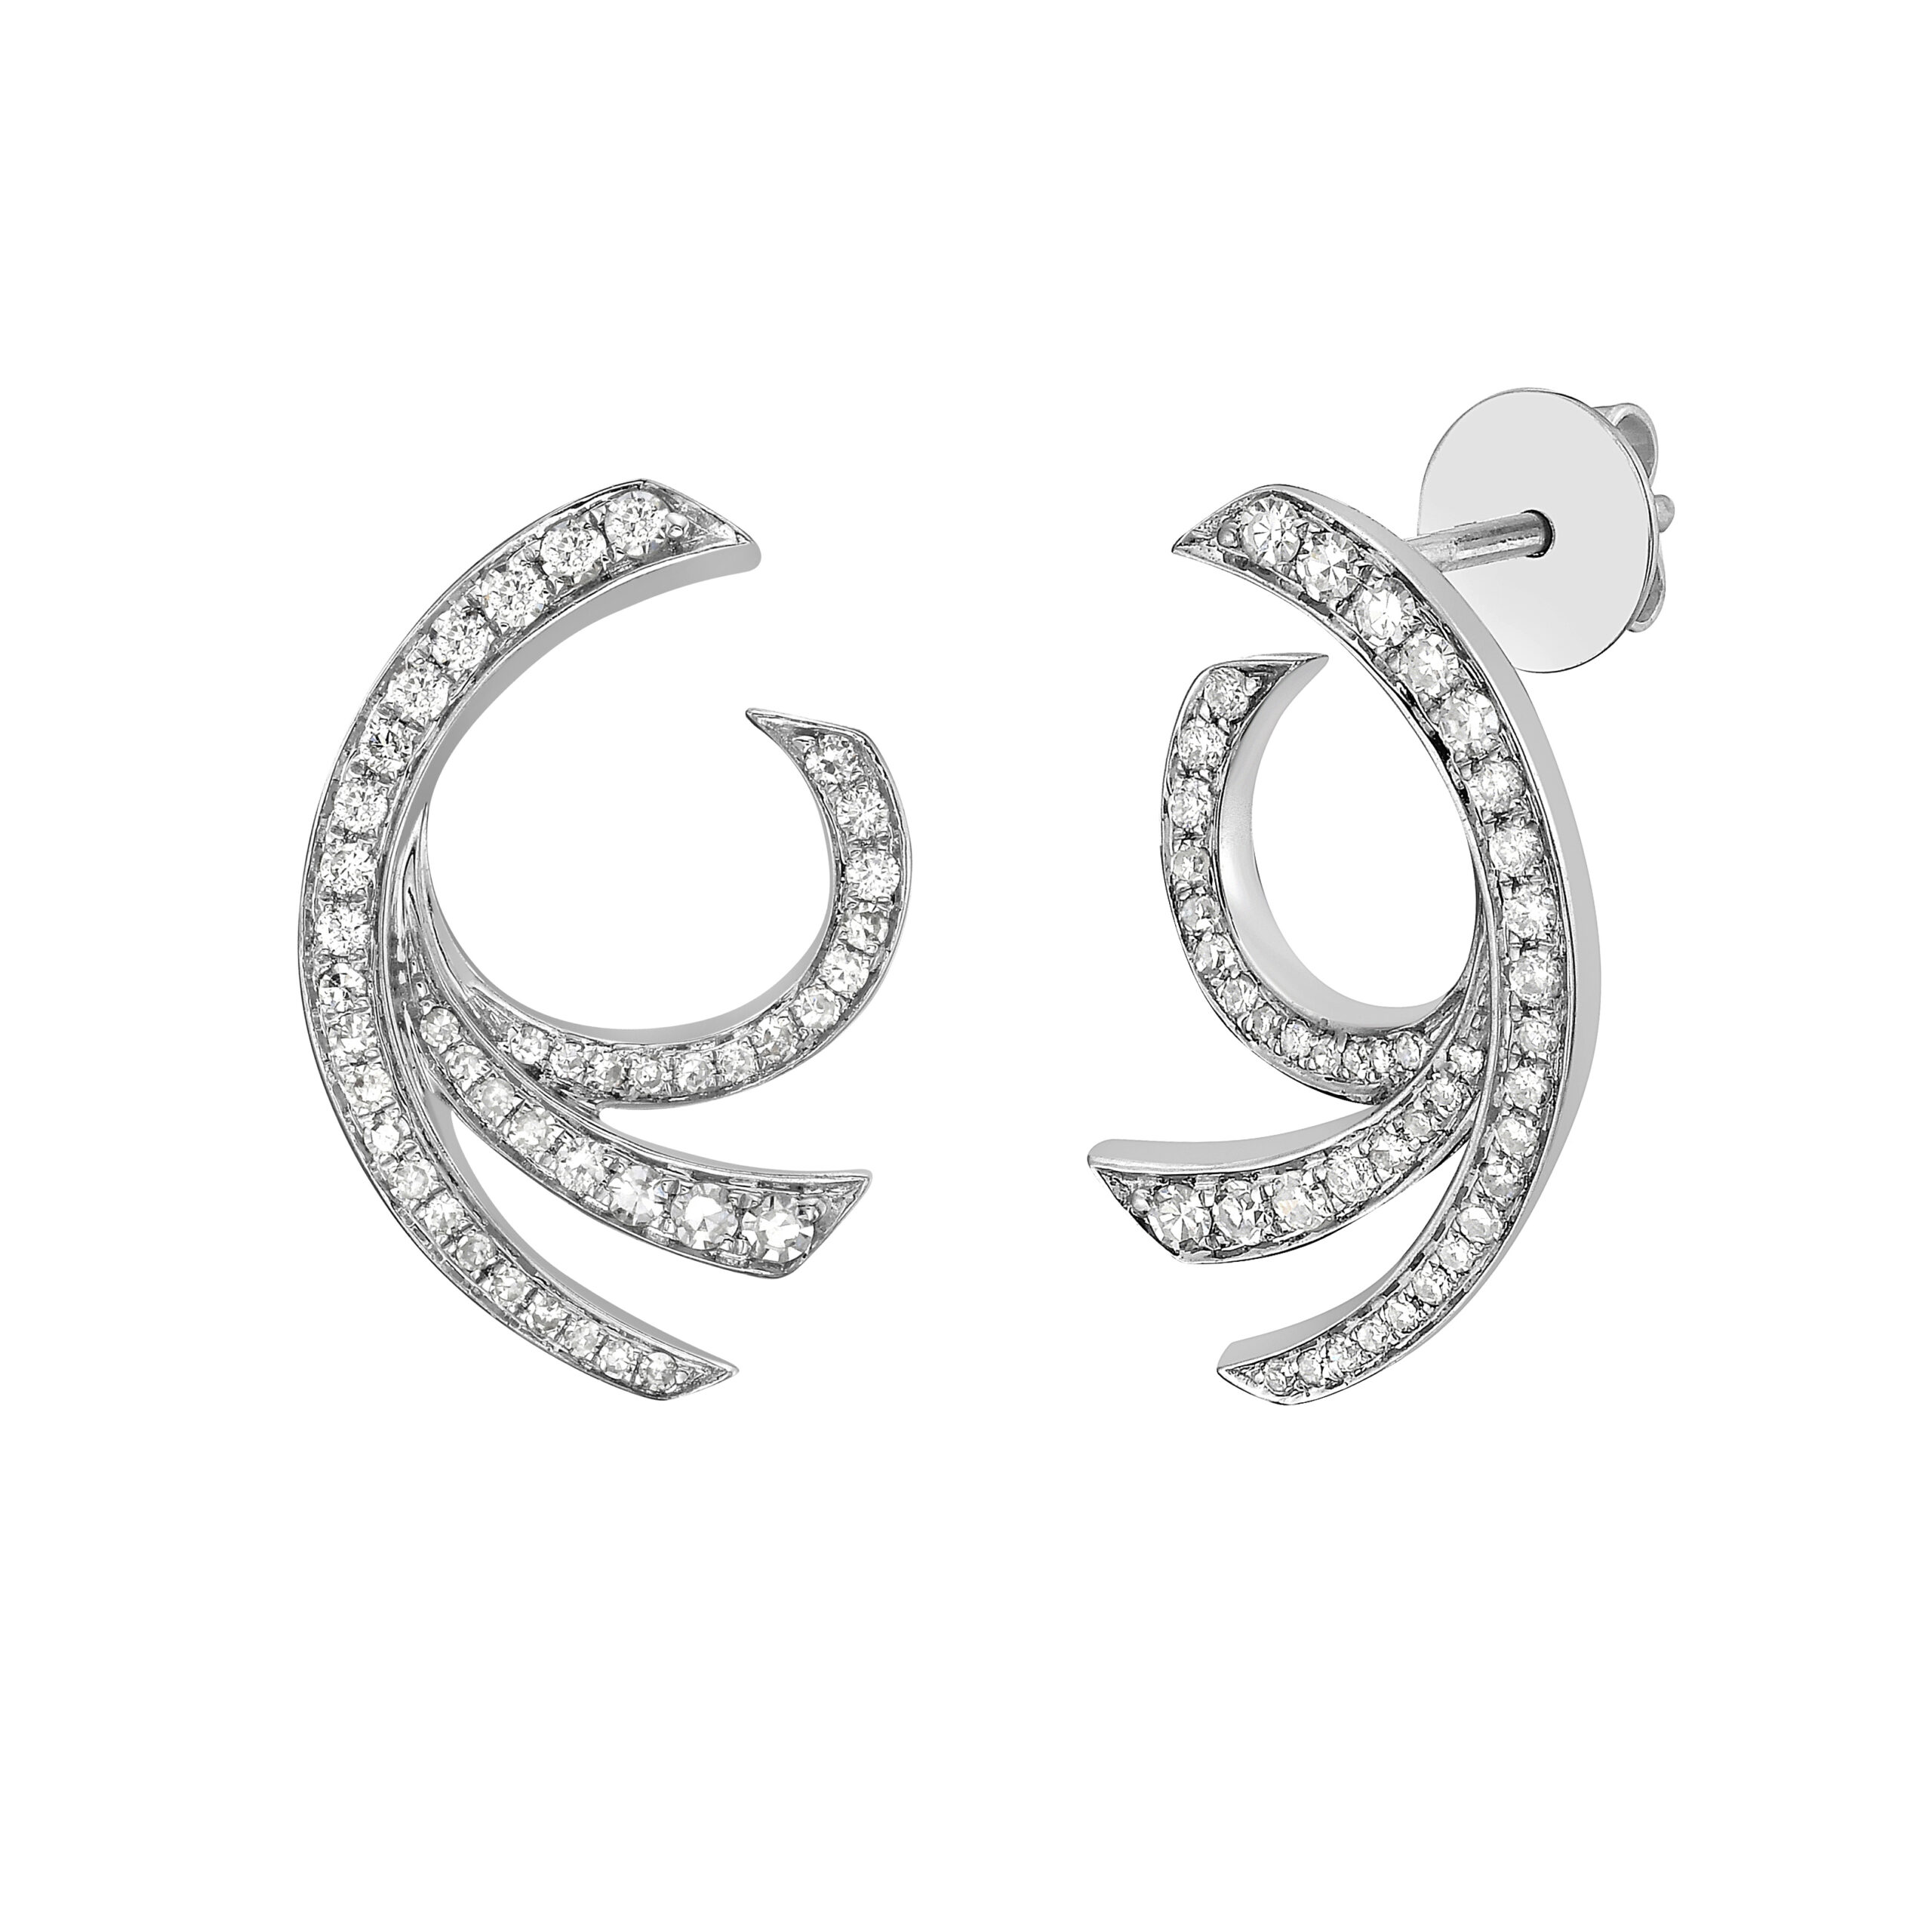 Gwendolyn Diamond Swirl Earrings